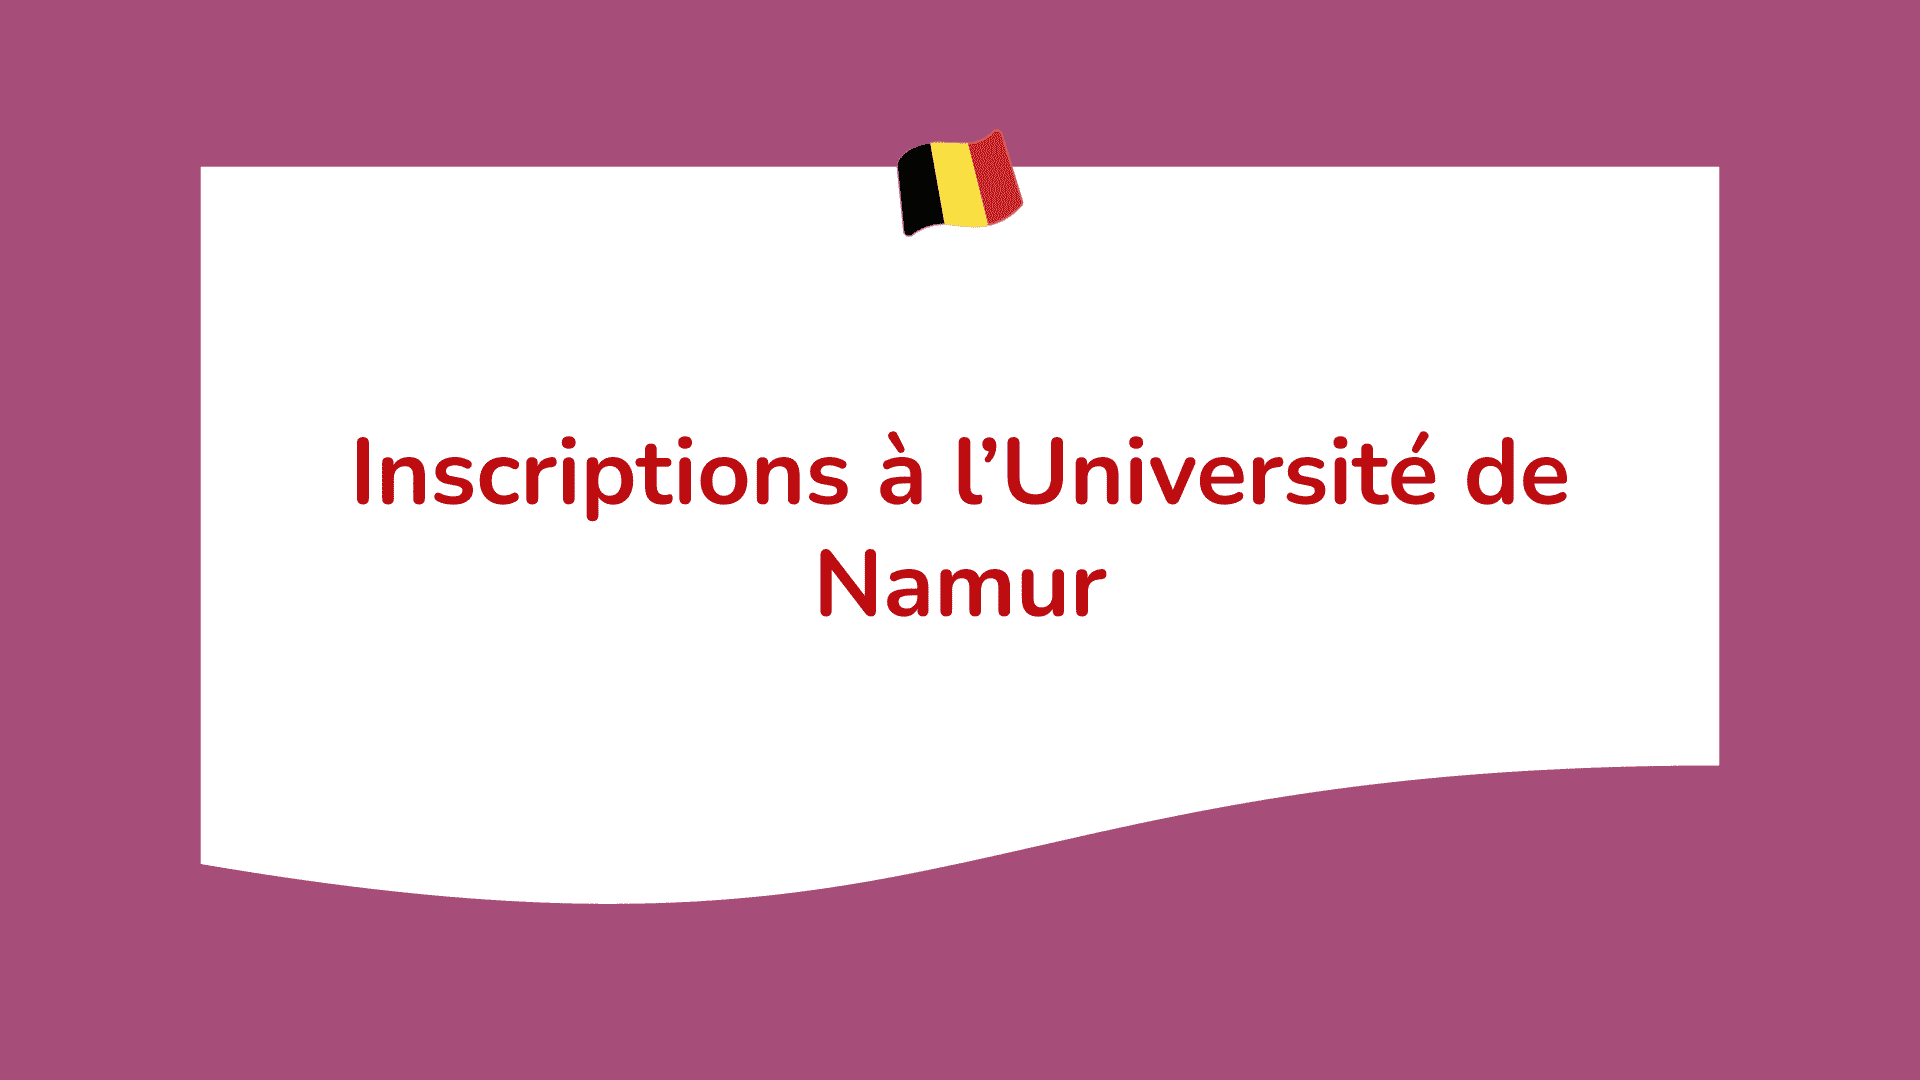 Inscriptions à l’Université de Namur